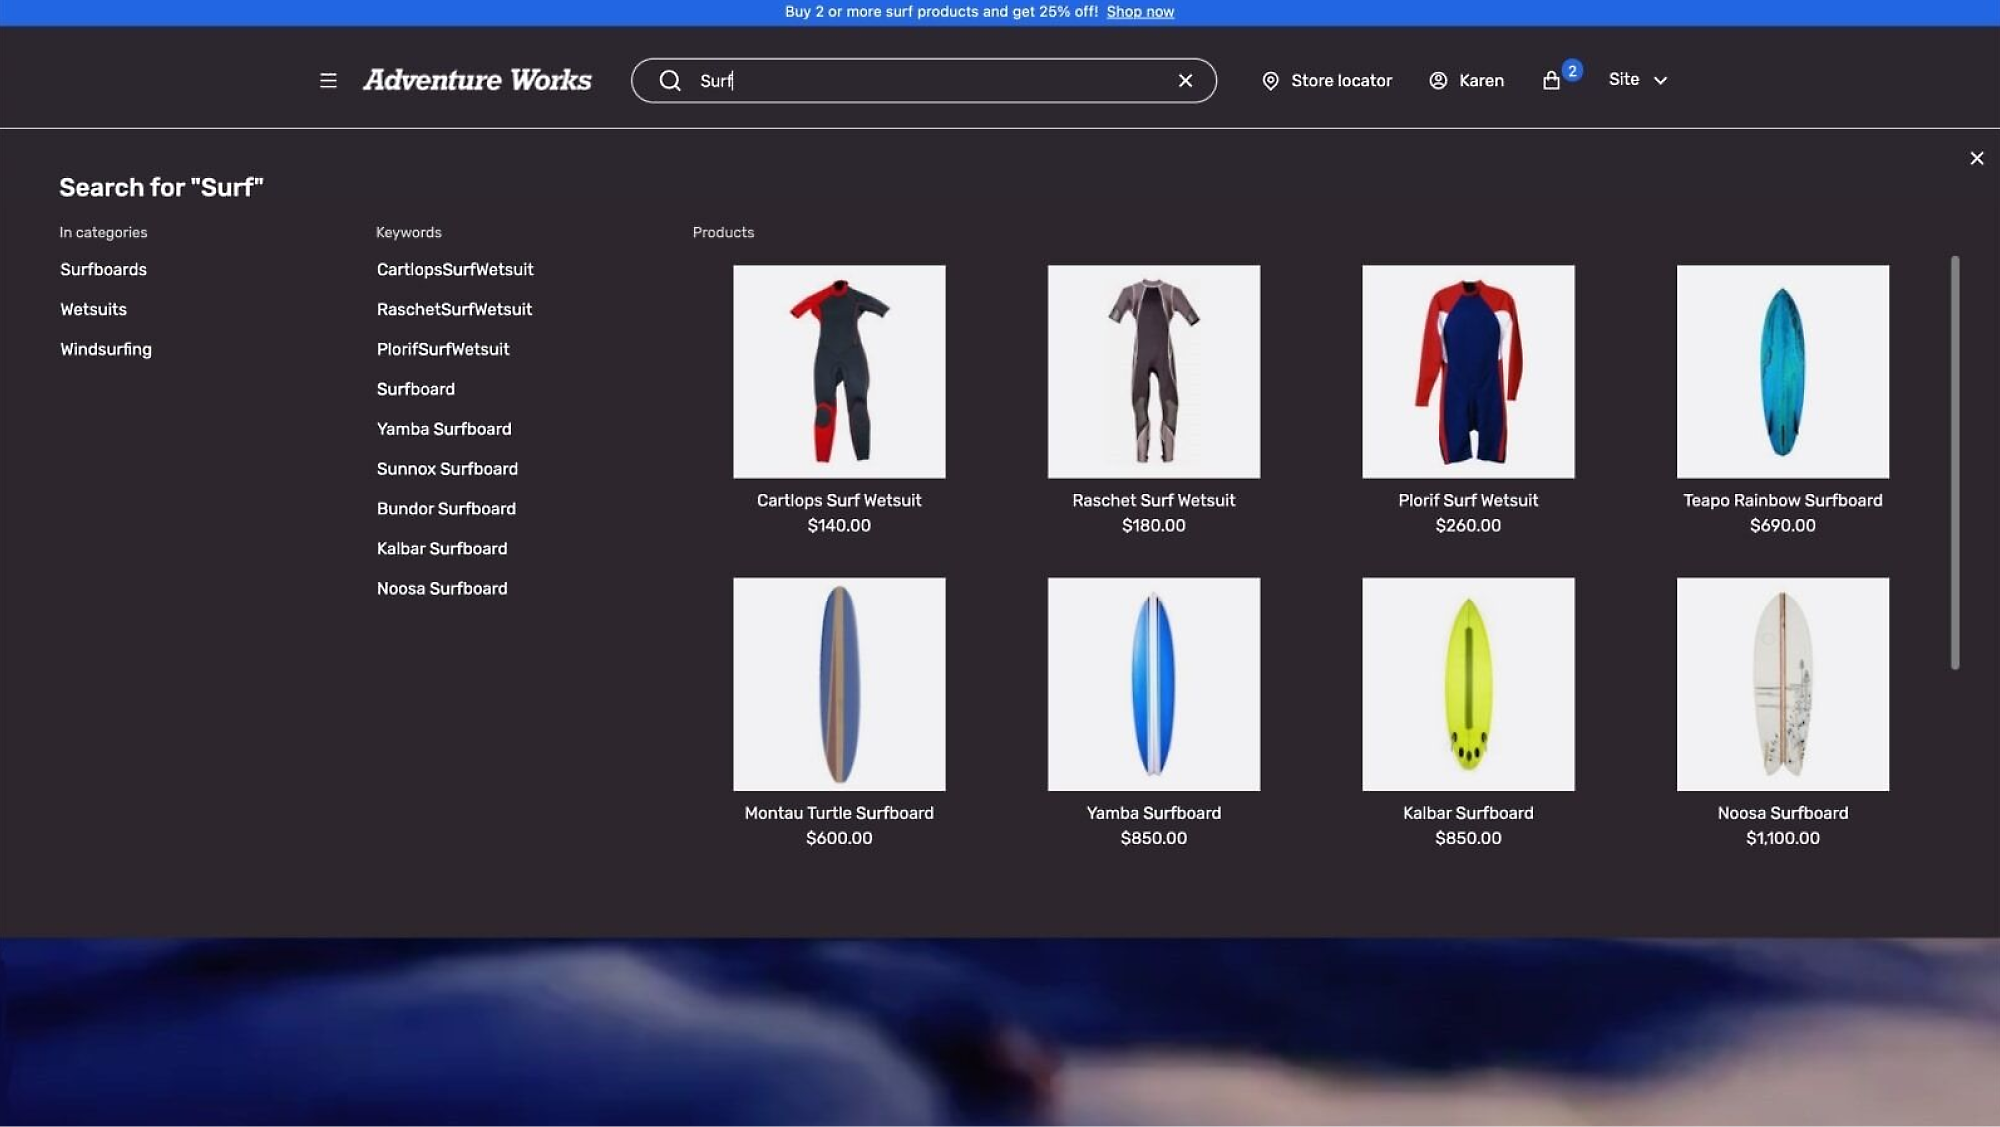 Promoção: Compre mais de 2 produtos de surfe, obtenha 25% de desconto. Os produtos incluem surfboards e wetsuits. Preços listados.